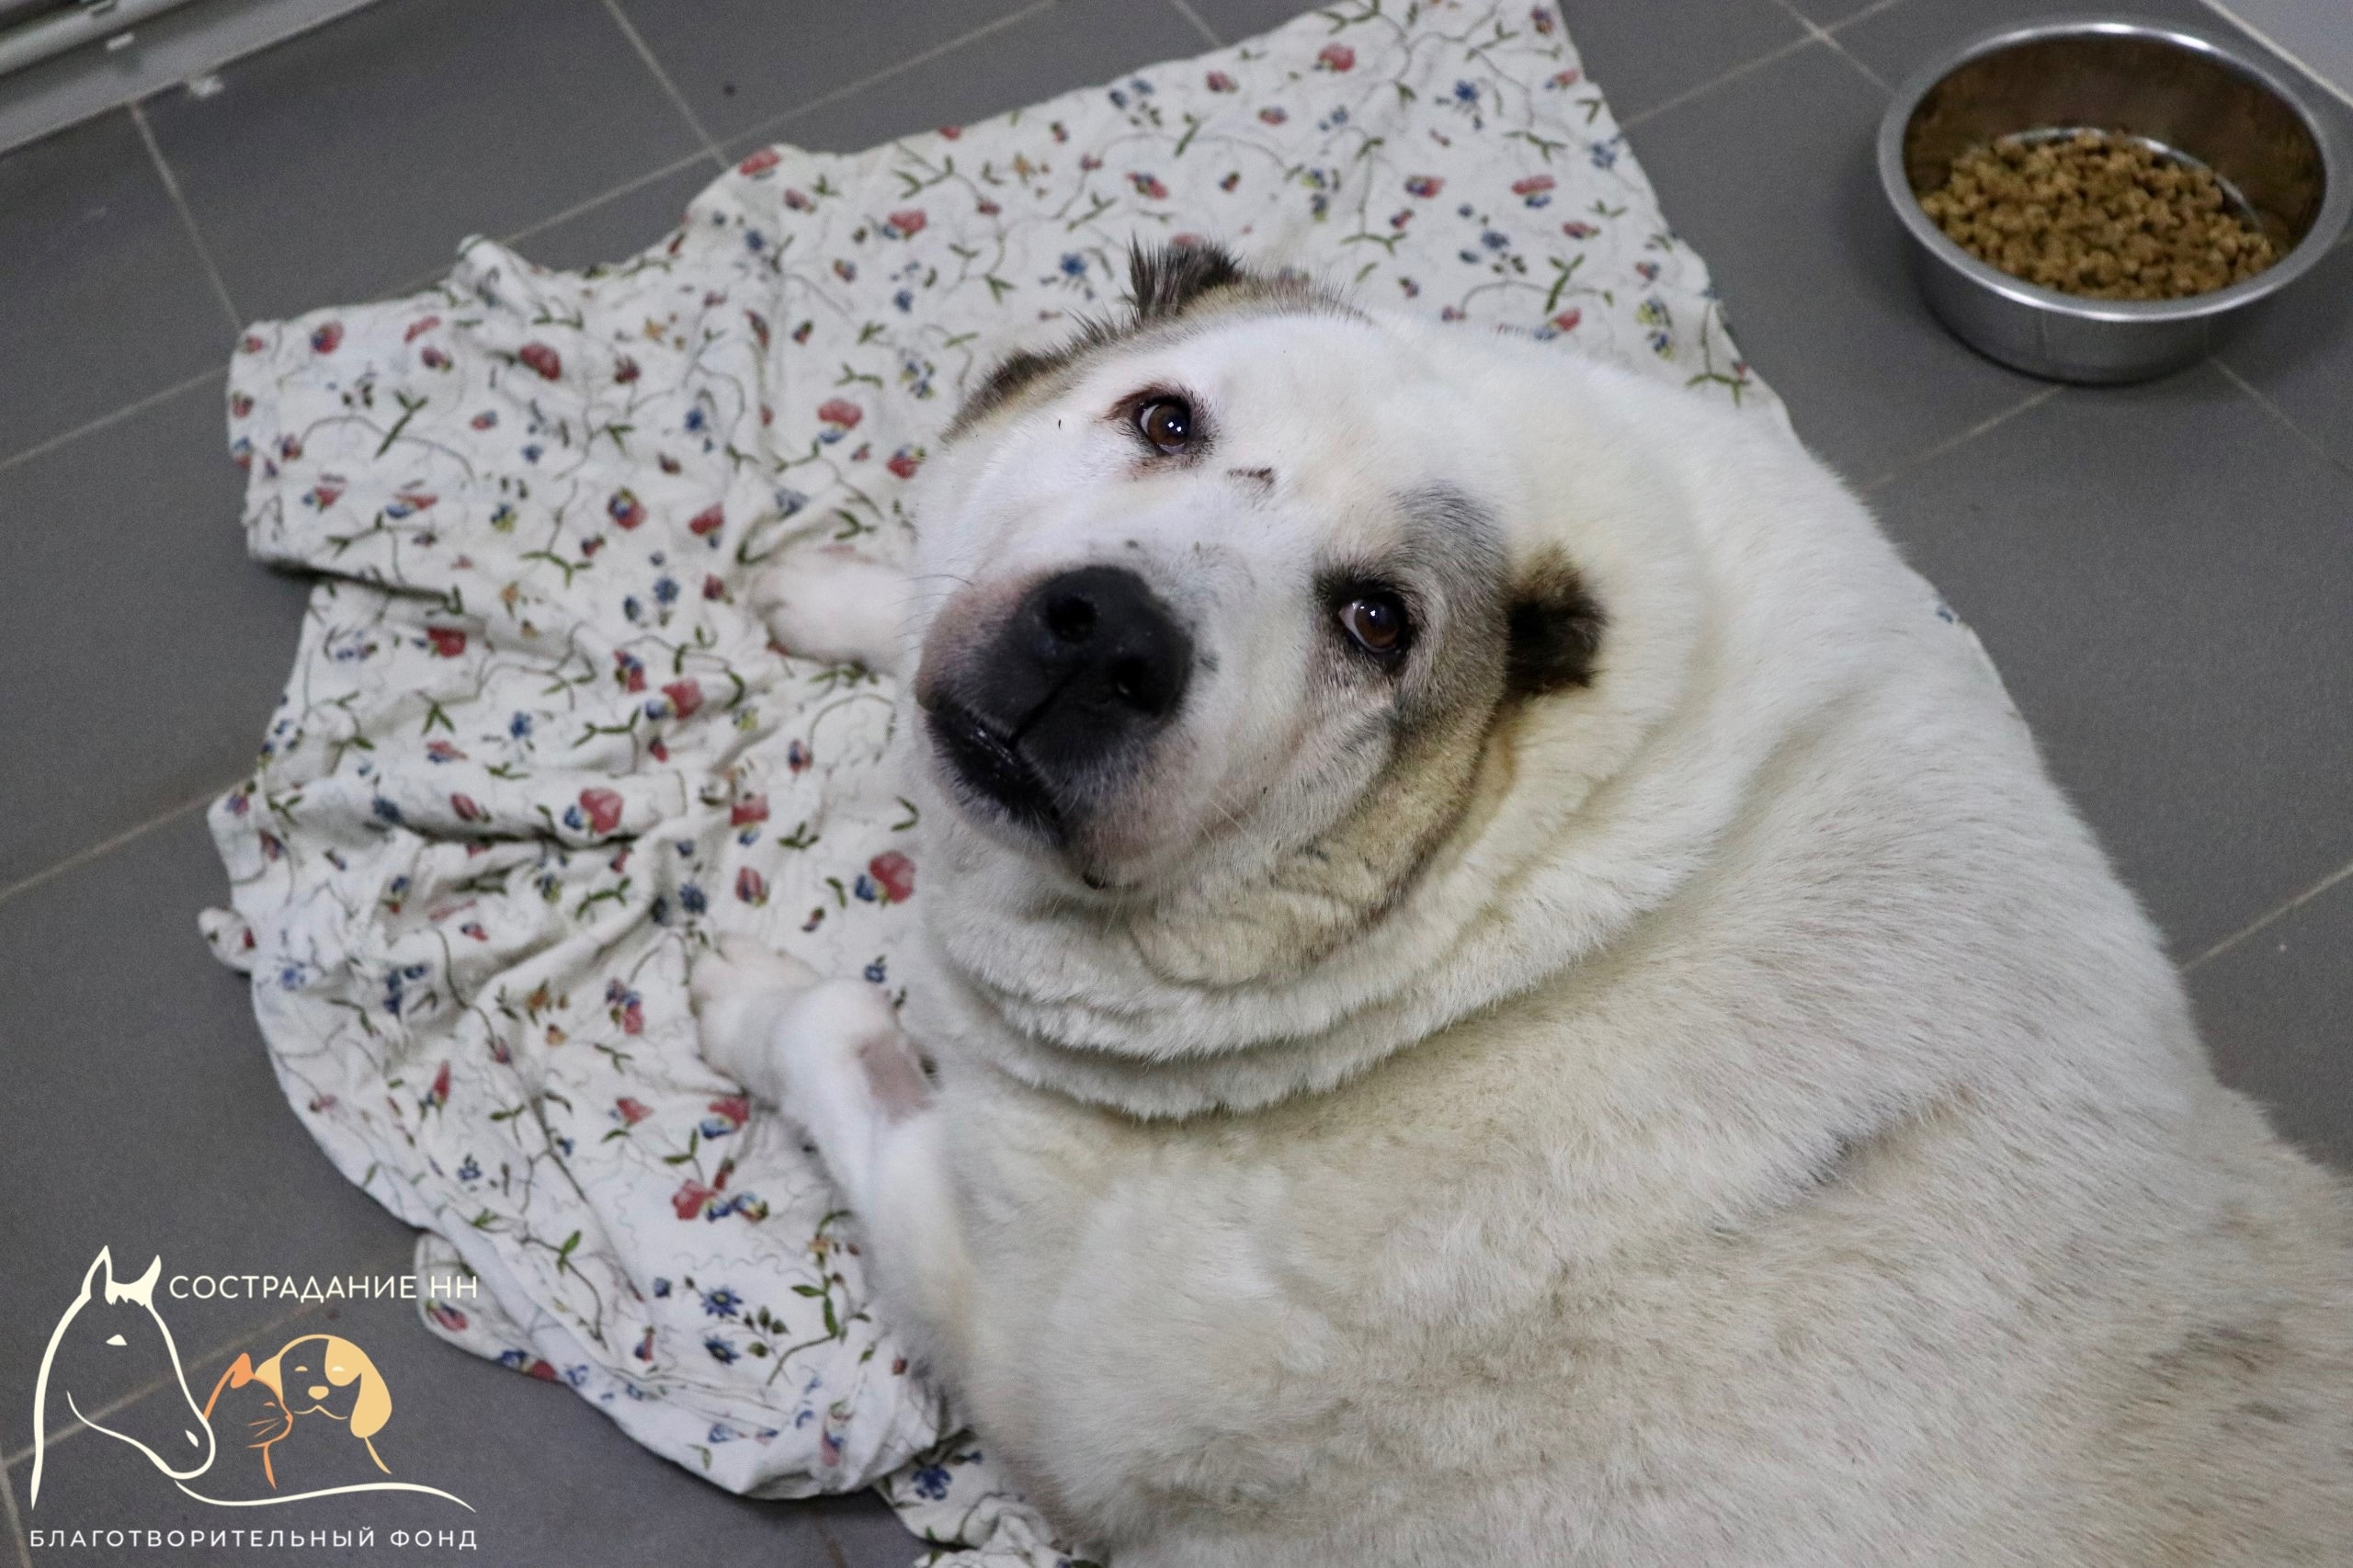 Самый толстый пес России из Нижнего Новгорода Кругетс похудел на 40 кг